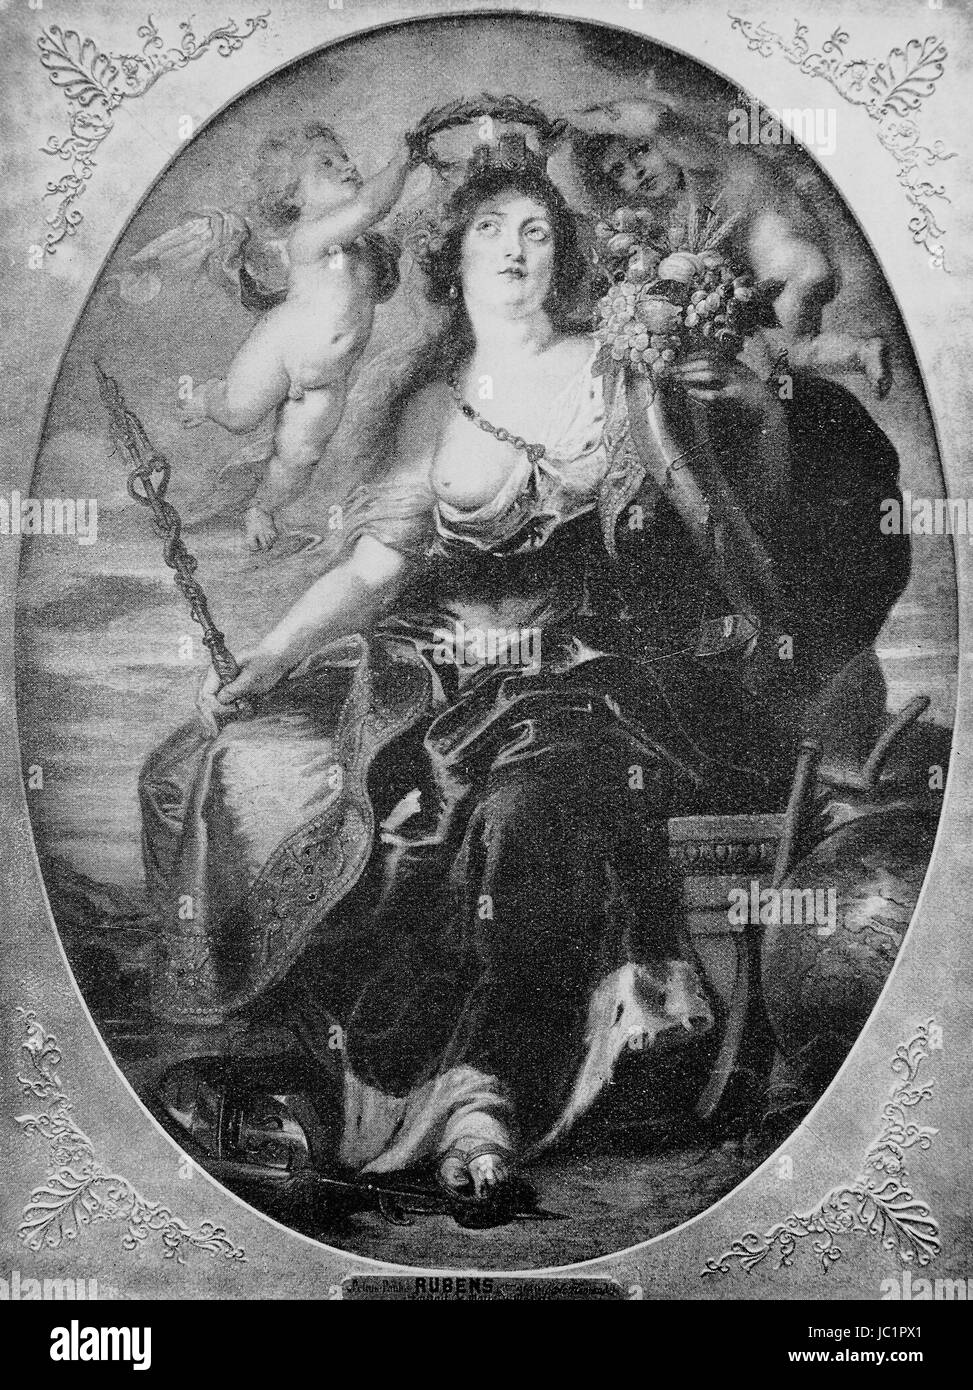 Porträt der Maria von Medici nach einem Gemälde von Rubens, 17. Jahrhundert. Maria de Medici, verbesserte digitale Reproduktion aus einer Publikation des Jahres 1880 Stockfoto